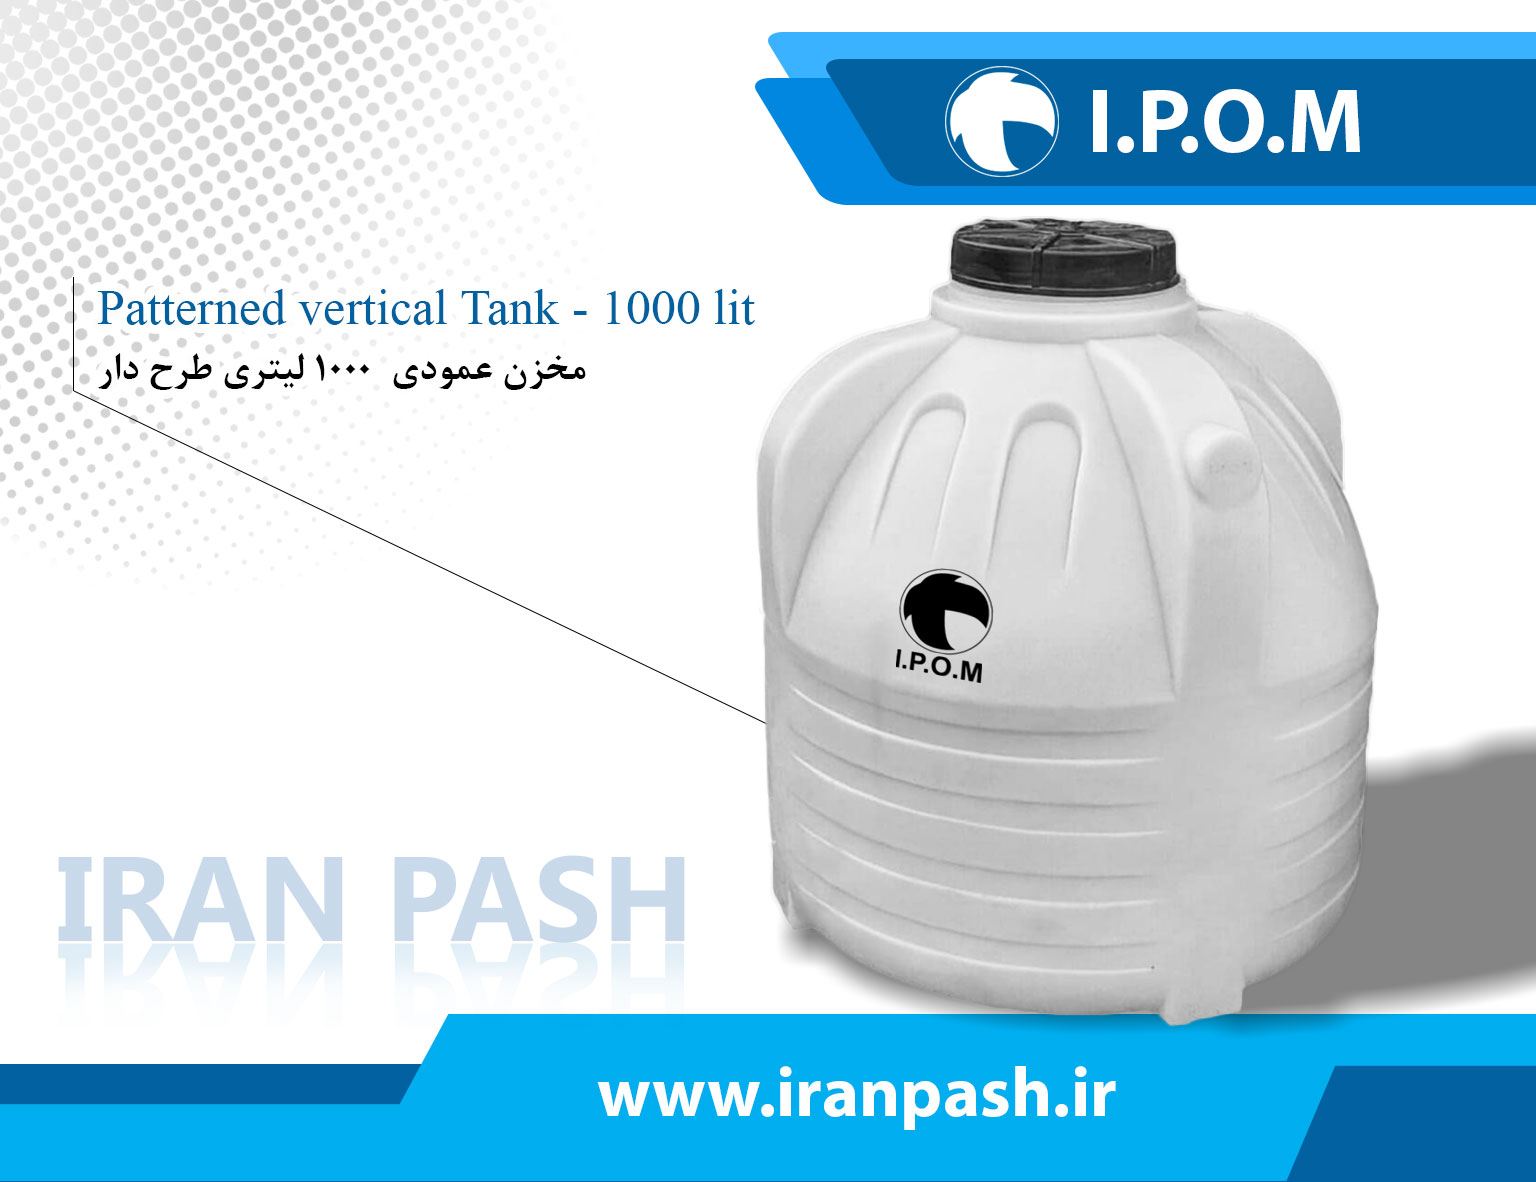 1000 Liter Vertical Patterned Tank